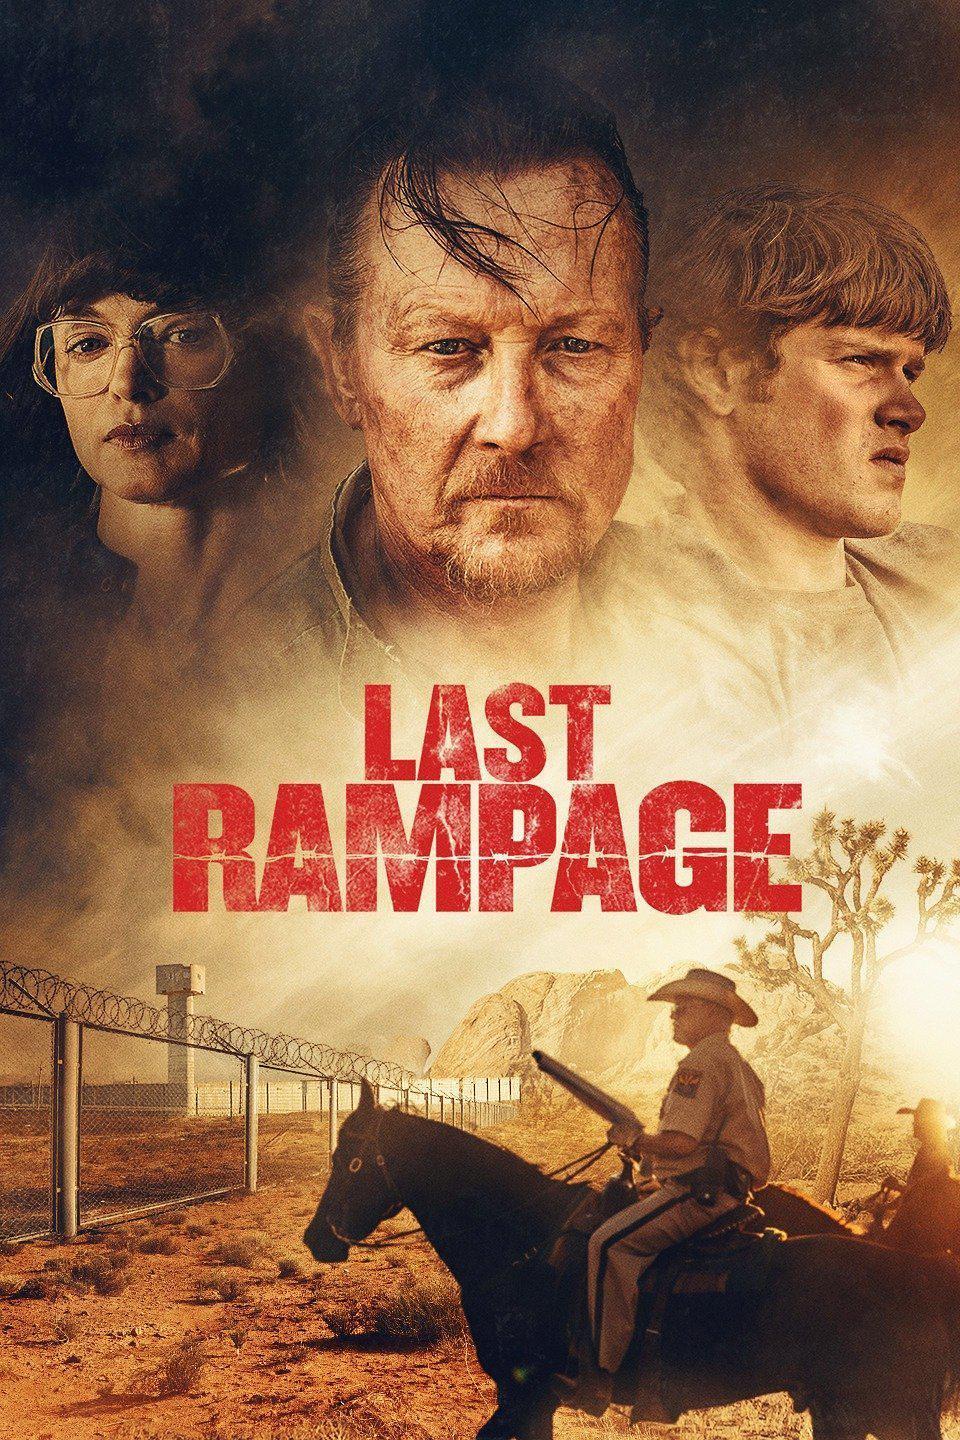 最初的疯狂 Last.Rampage.The.Escape.of.Gary.Tison.2017.1080p.BluRay.REMUX.AVC.DTS-HD.MA.5.1-FGT 15.40-1.png